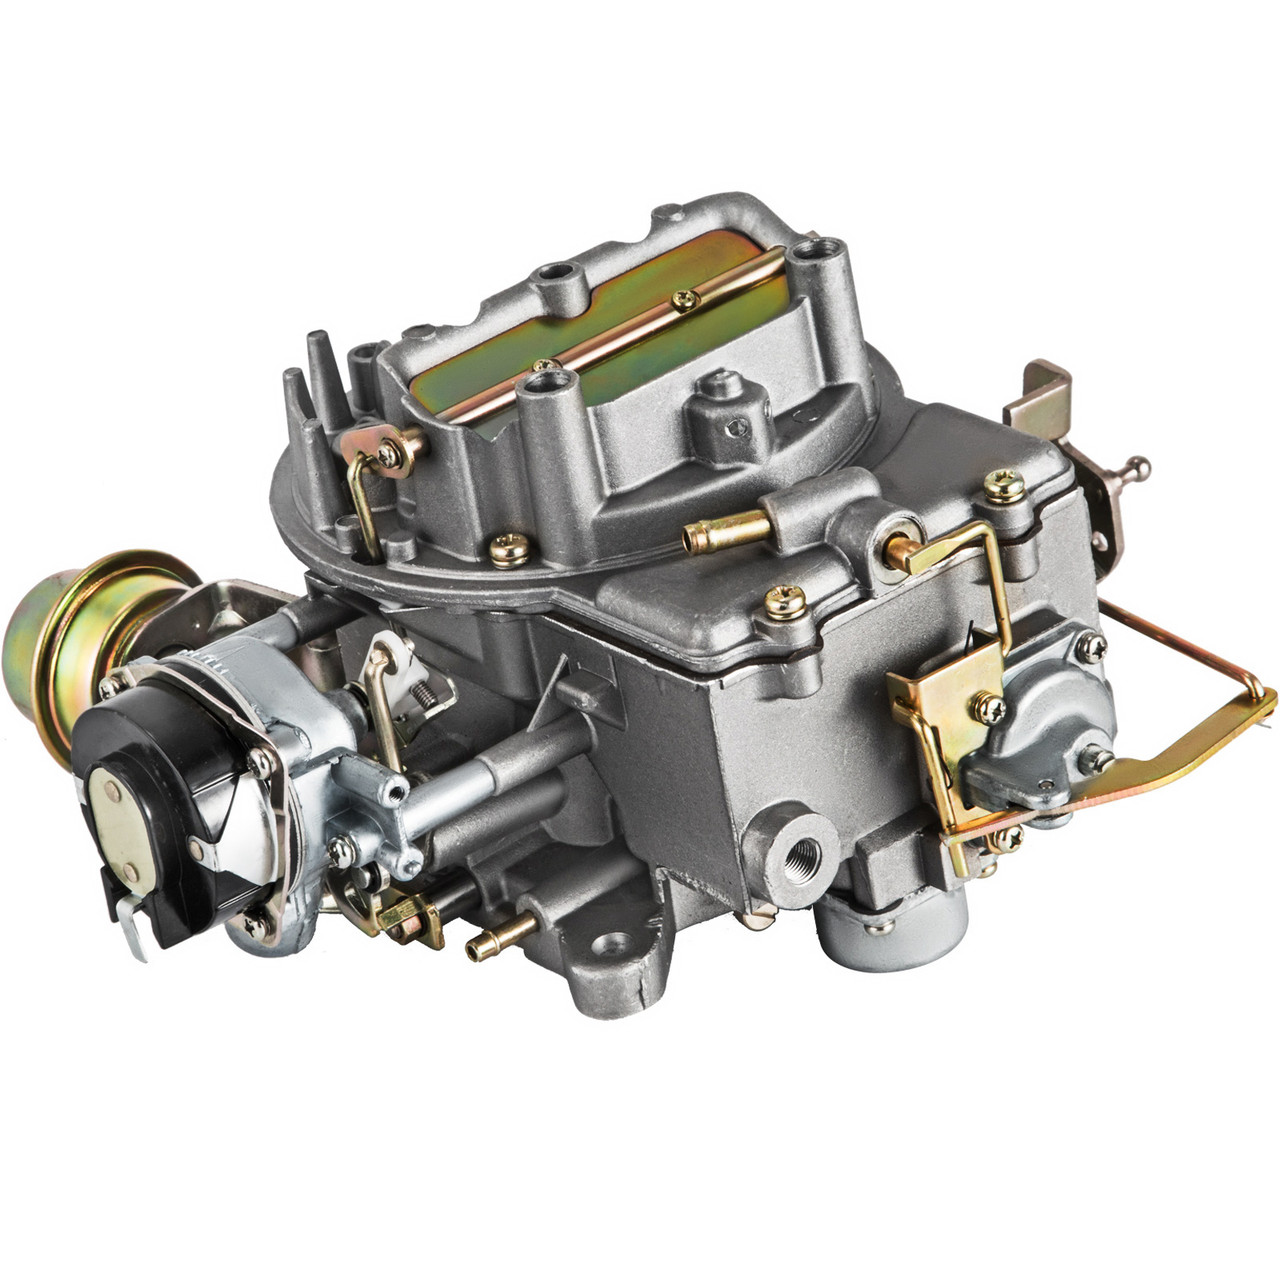 Motorcraft 2100, 2 Barrel Carburetor Kit Ford Products - K4008